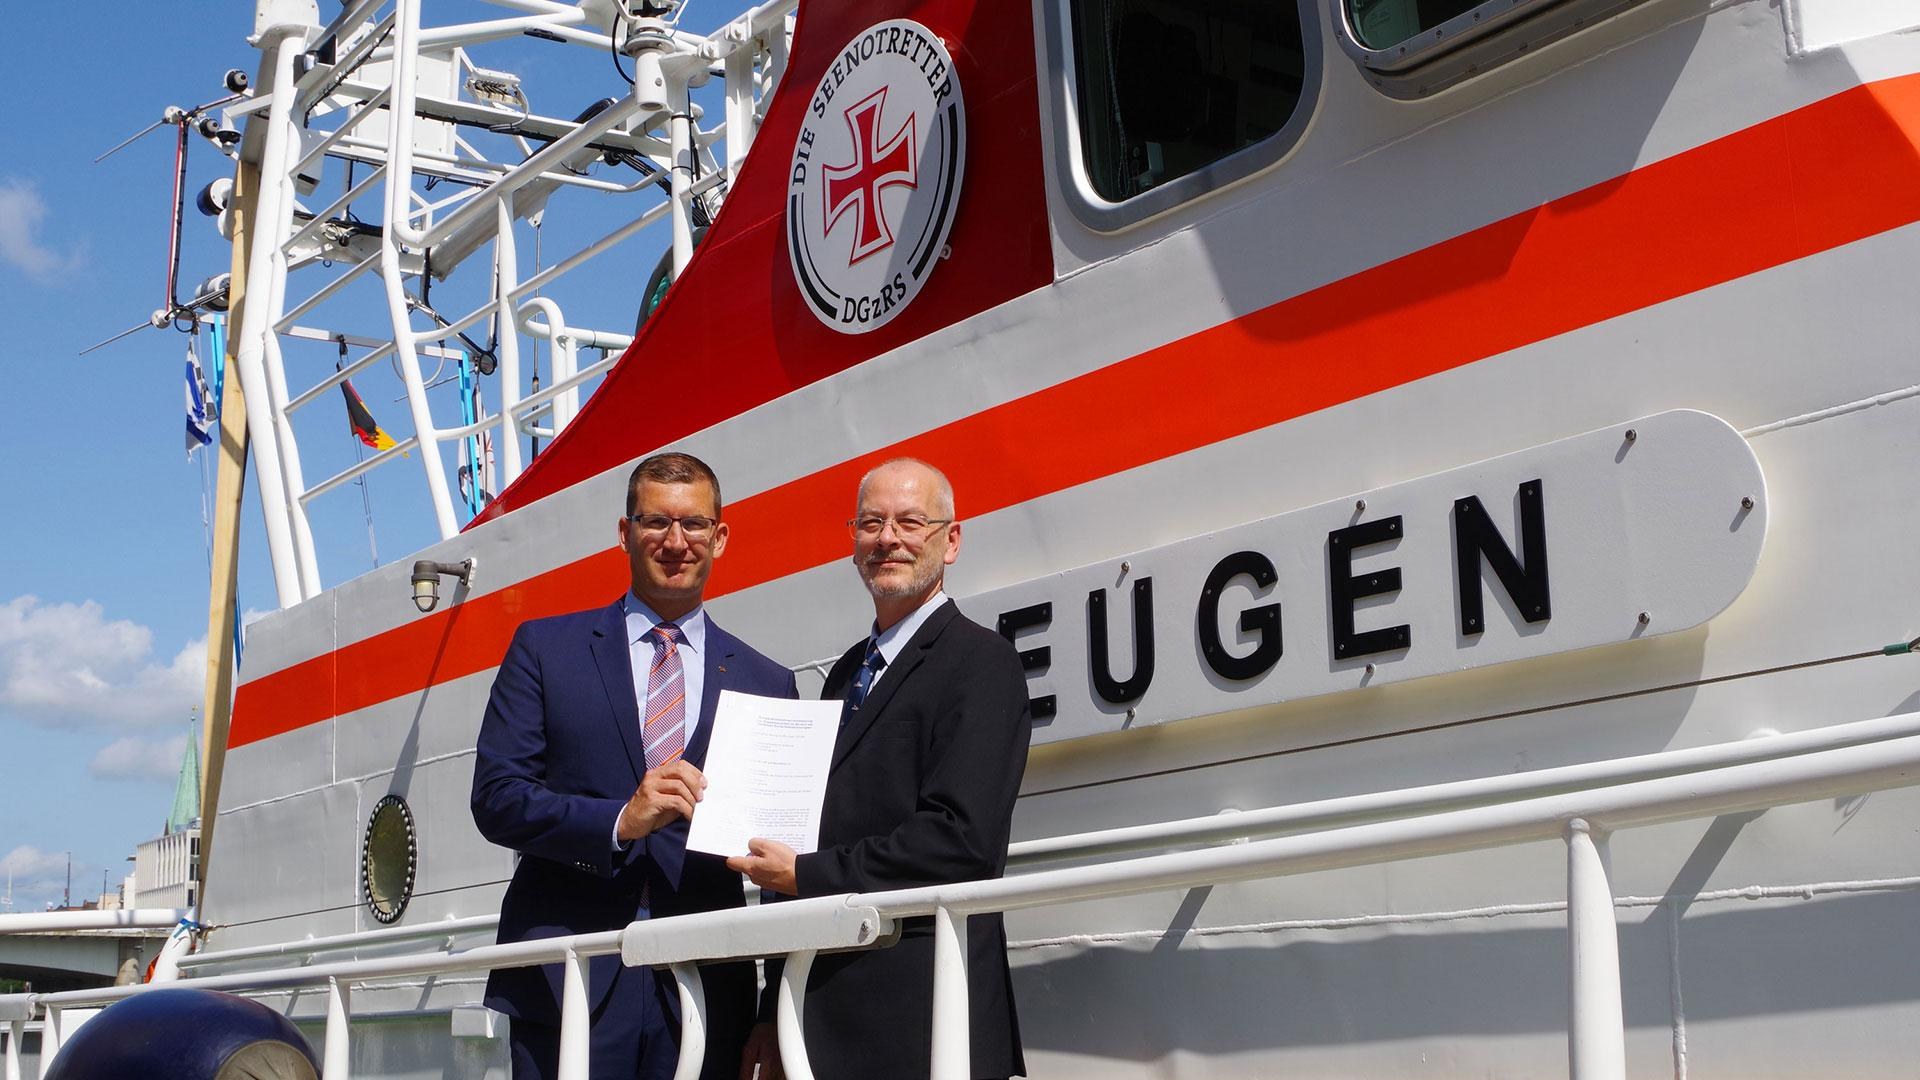 Foto Dr. Göge und Kapitän Fox nach der Unterzeichnung des Abkommens